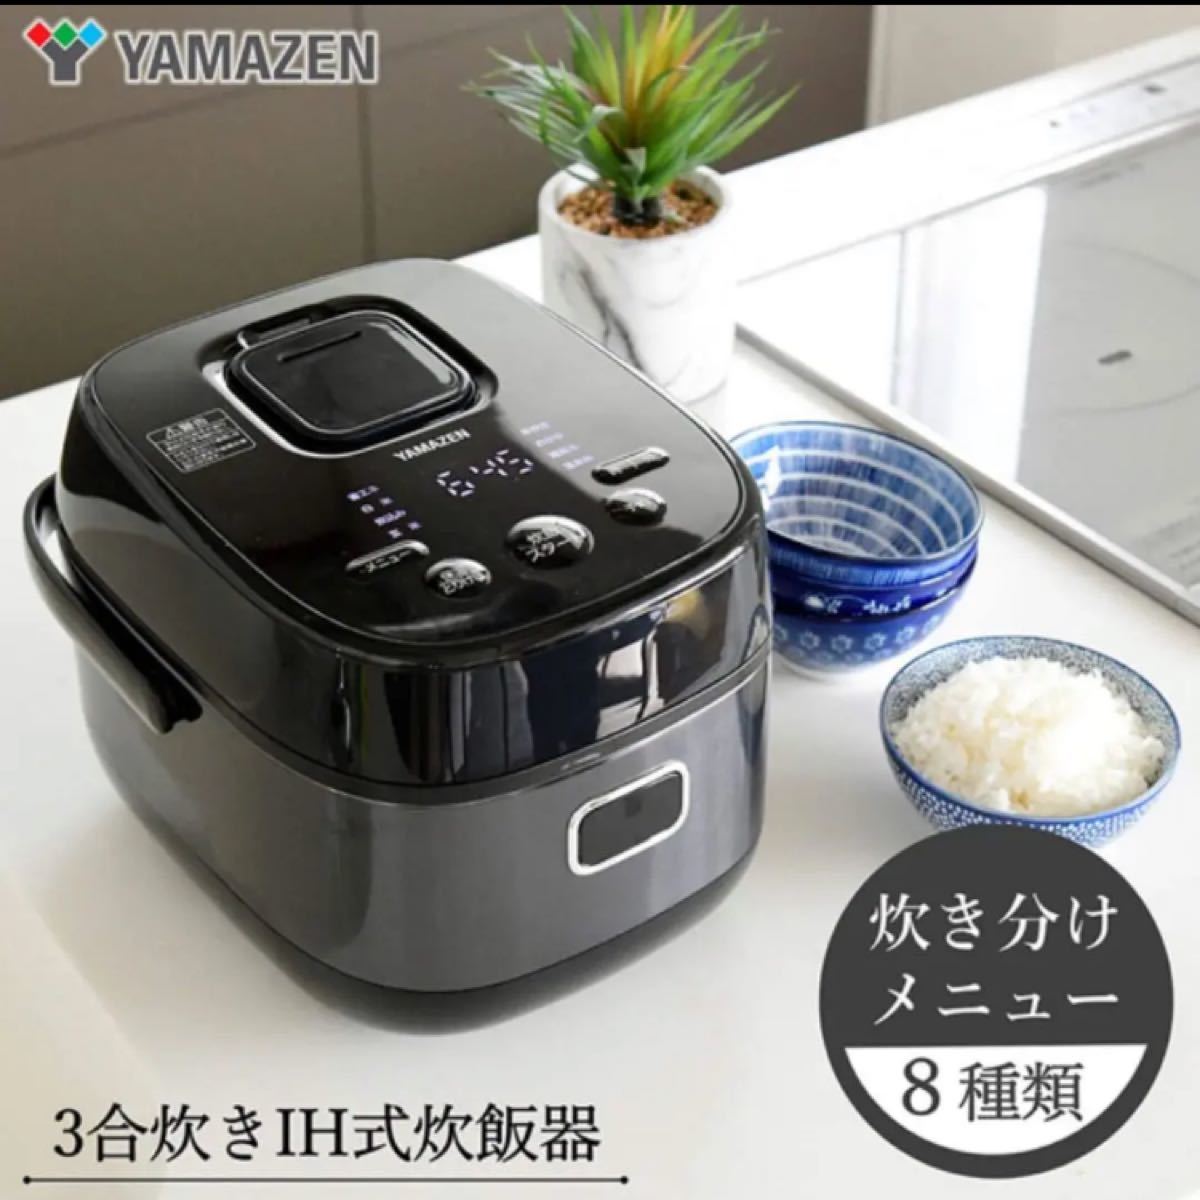 【新品】IH炊飯器 3合 一人暮らし 8種類炊き分け機能 IH式 炊飯器 保温